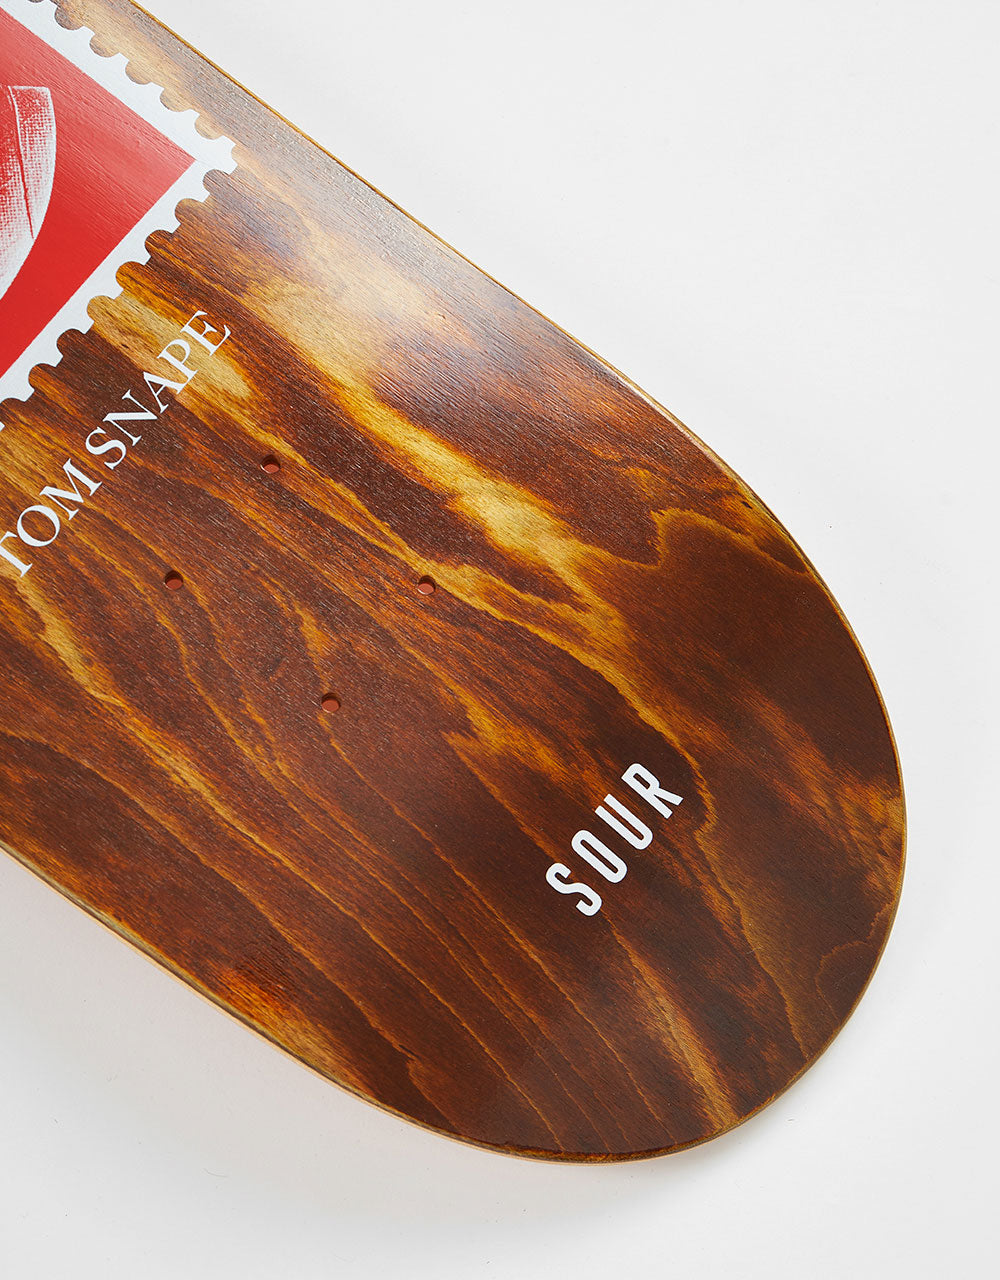 Sour Solution Snape Stamp Skateboard Deck - 8.25"